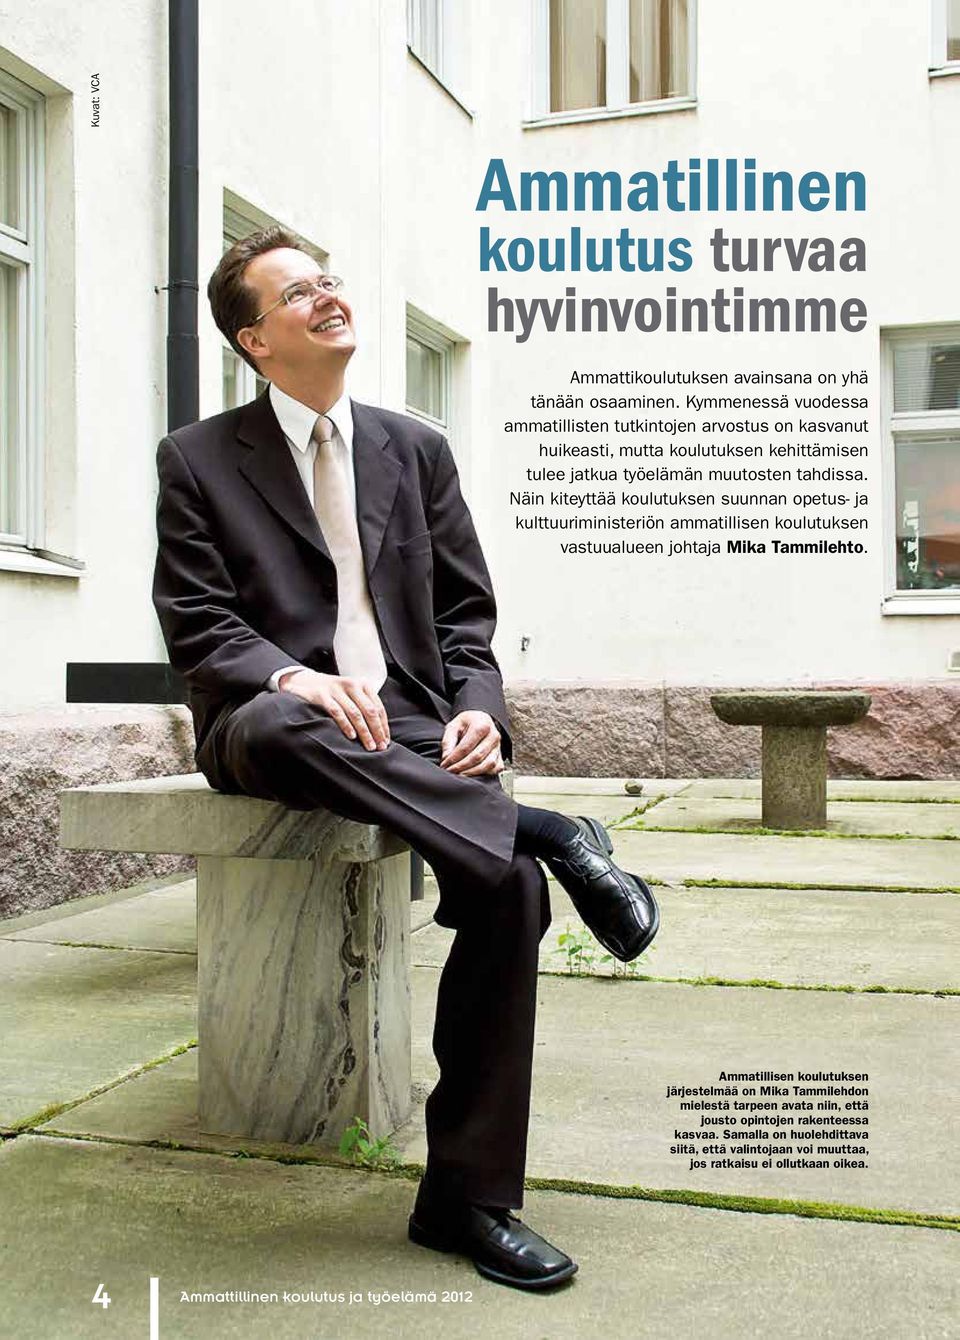 Näin kiteyttää koulutuksen suunnan opetus- ja kulttuuriministeriön ammatillisen koulutuksen vastuualueen johtaja Mika Tammilehto.